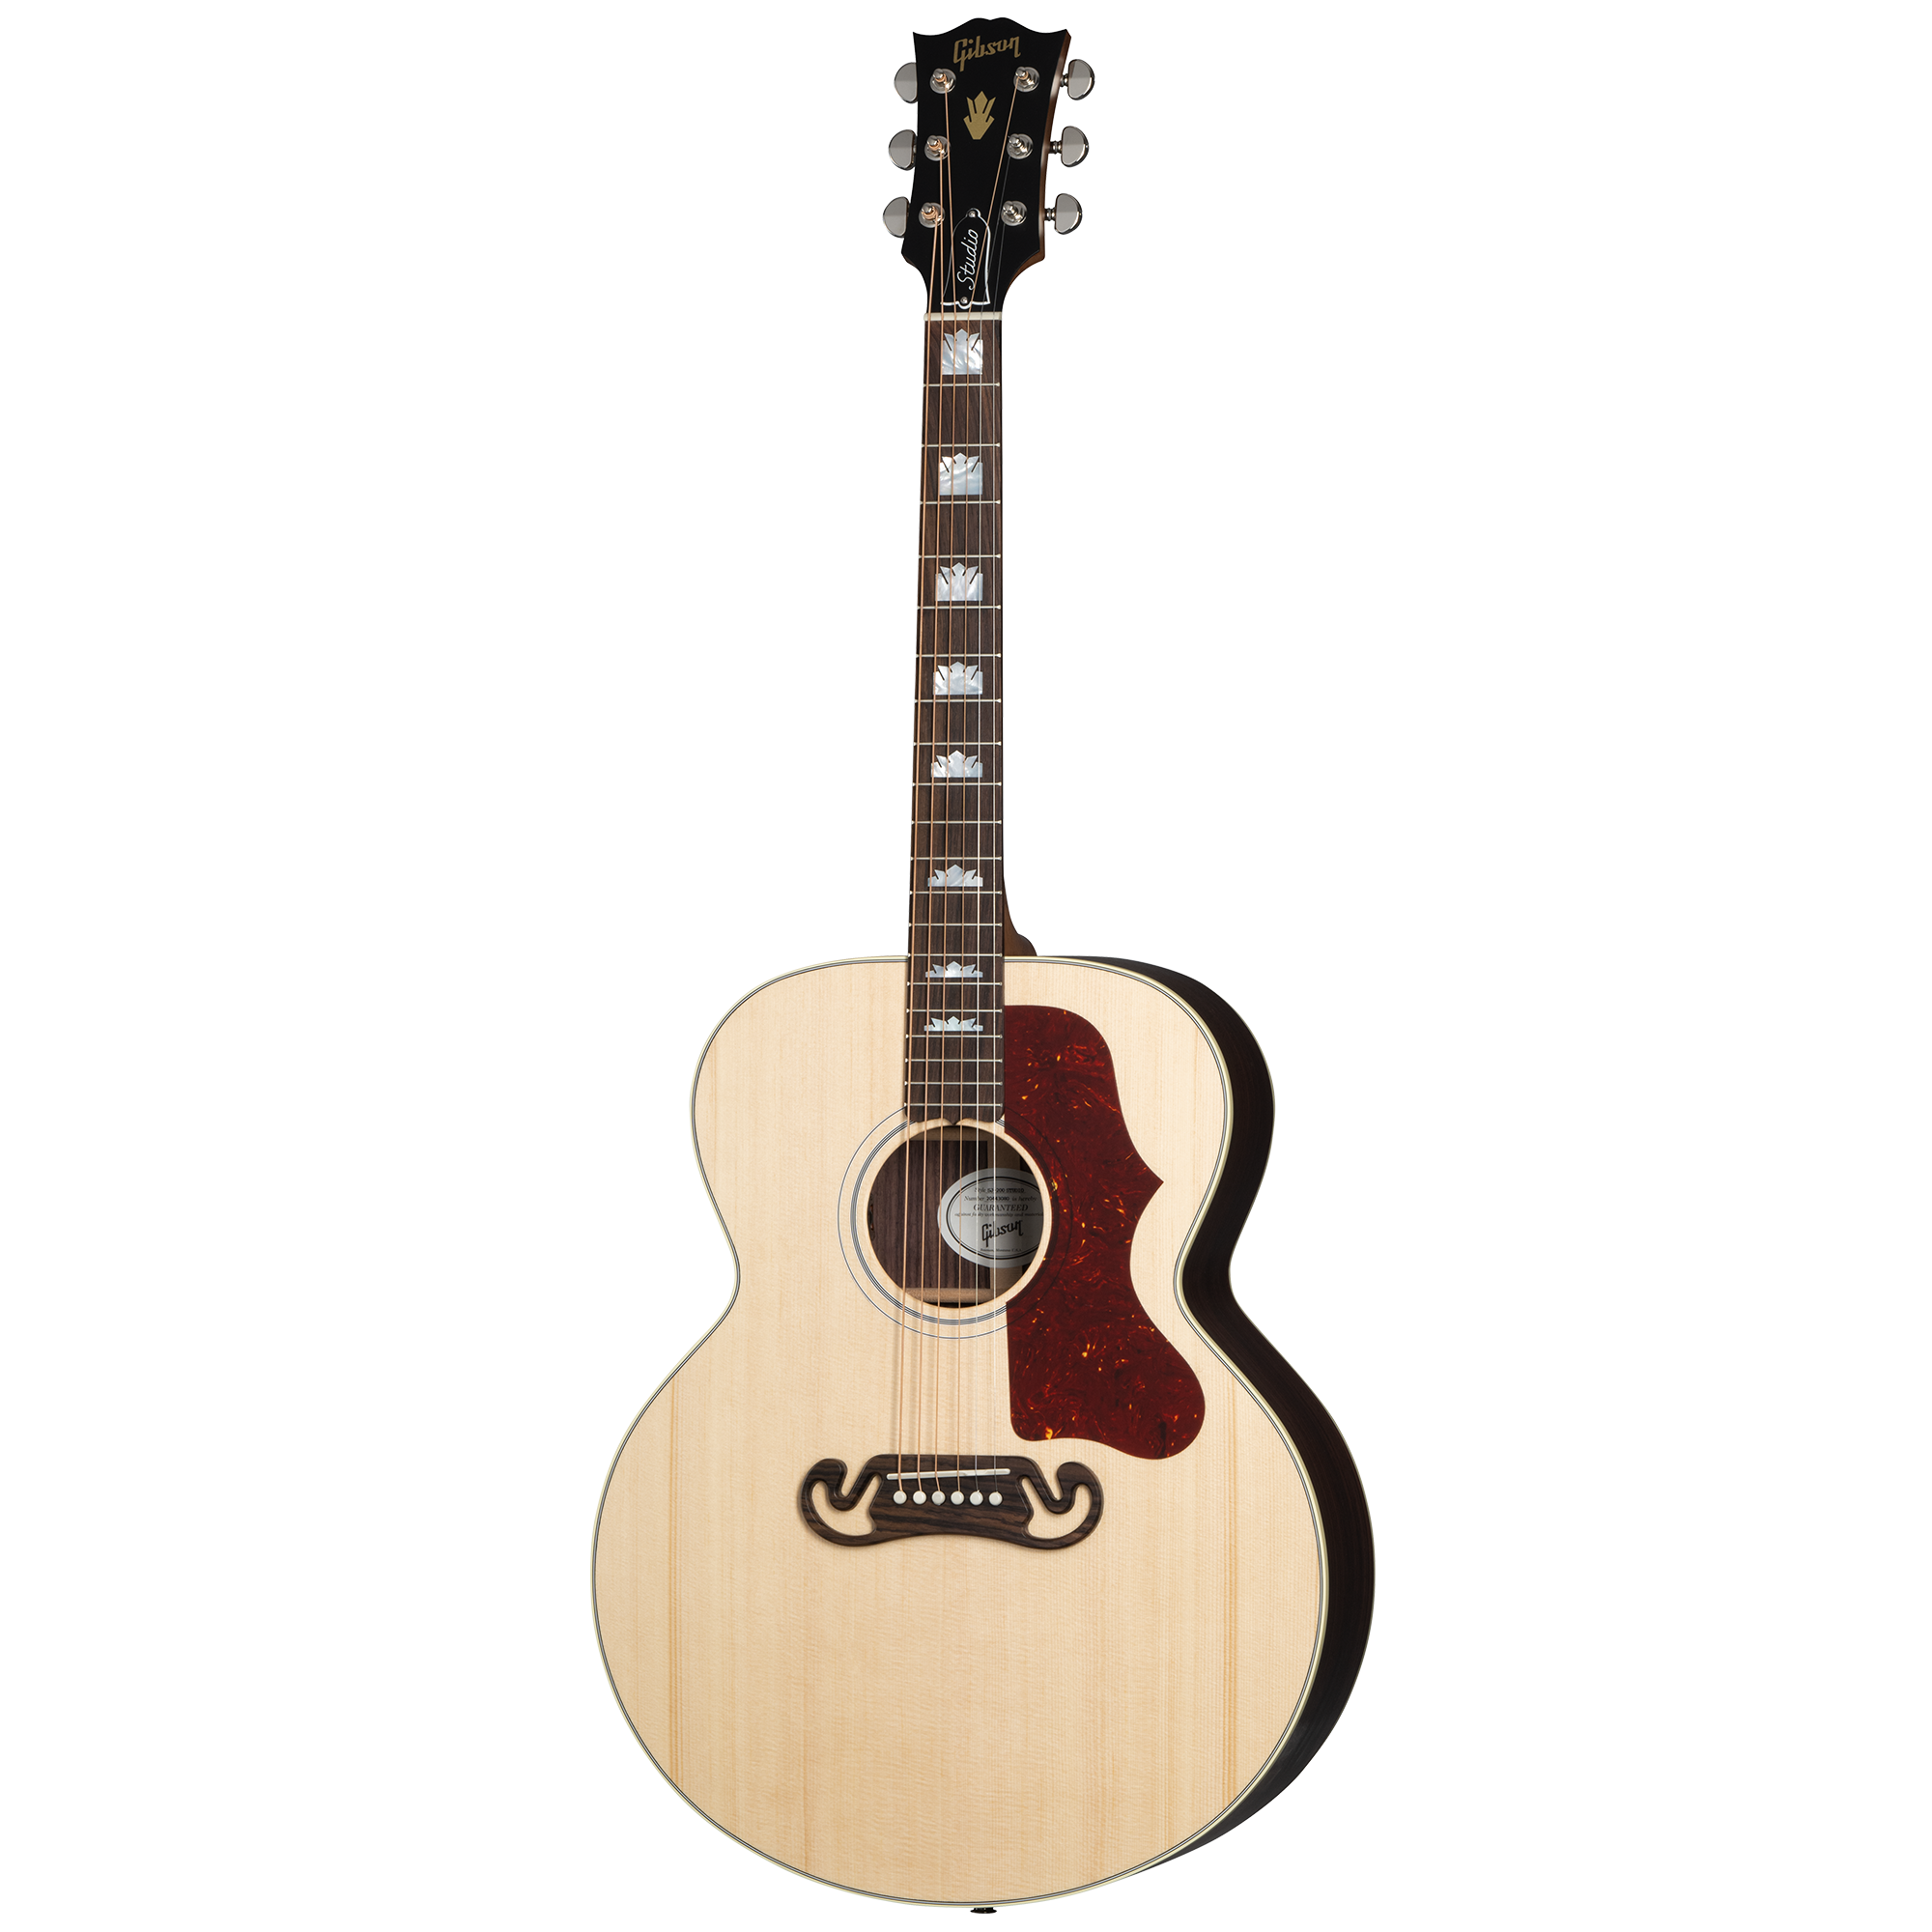 Gibson Sj-200 Studio Rosewood Acoustic-electric Guitar - Natural (Sj200)